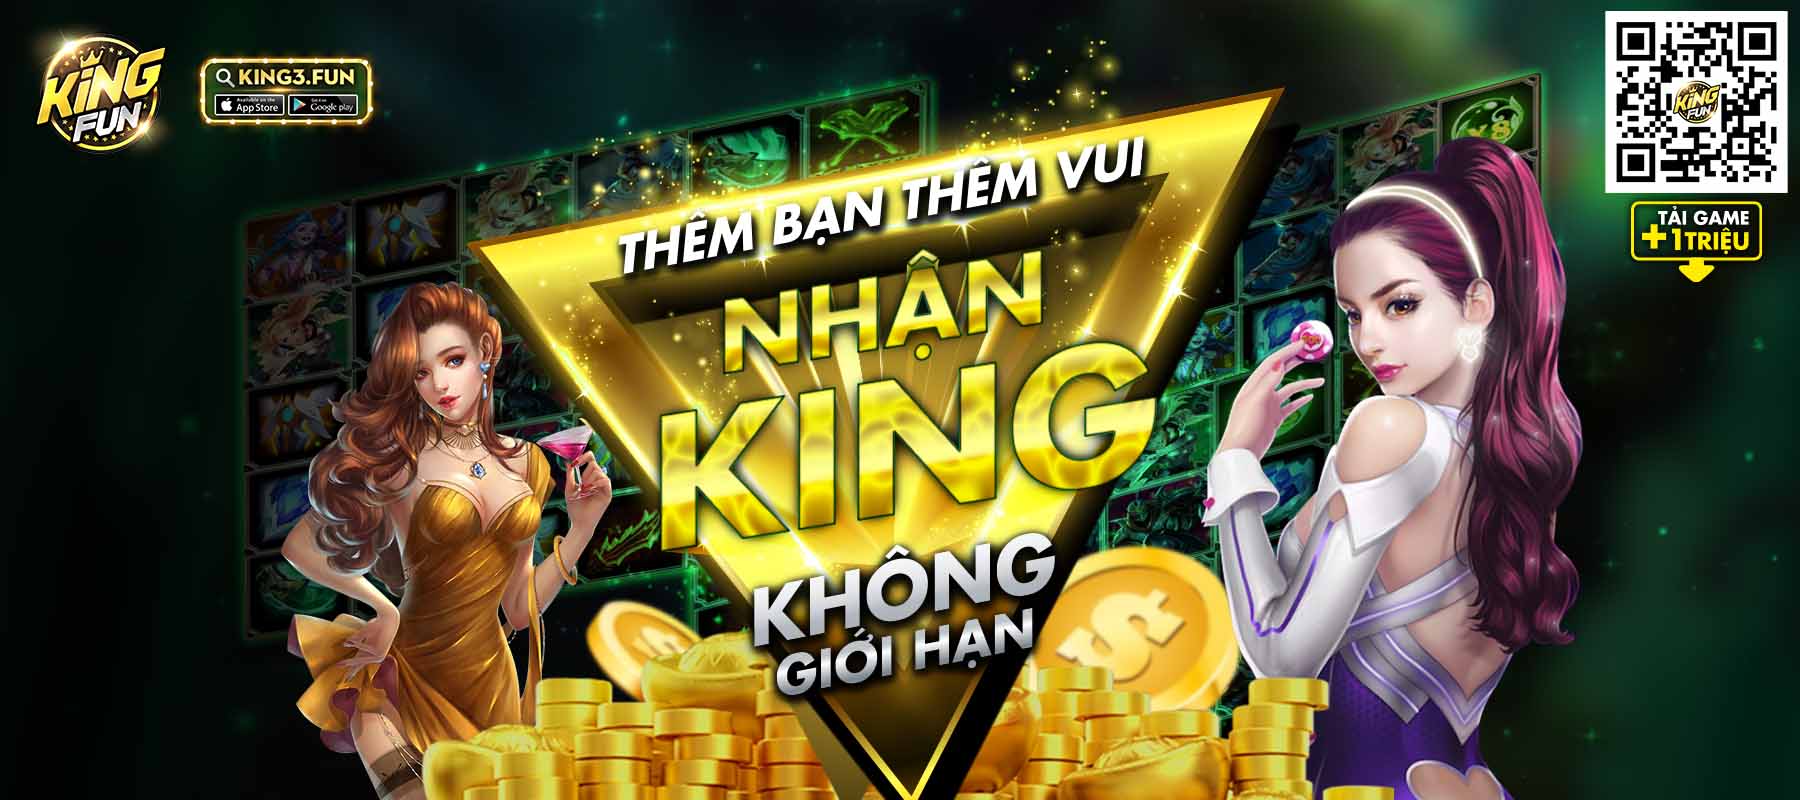 Sự kiện Kingfun tháng 8/2022: LÀM GIÀU KHÔNG KHÓ CÓ KING FUN LO